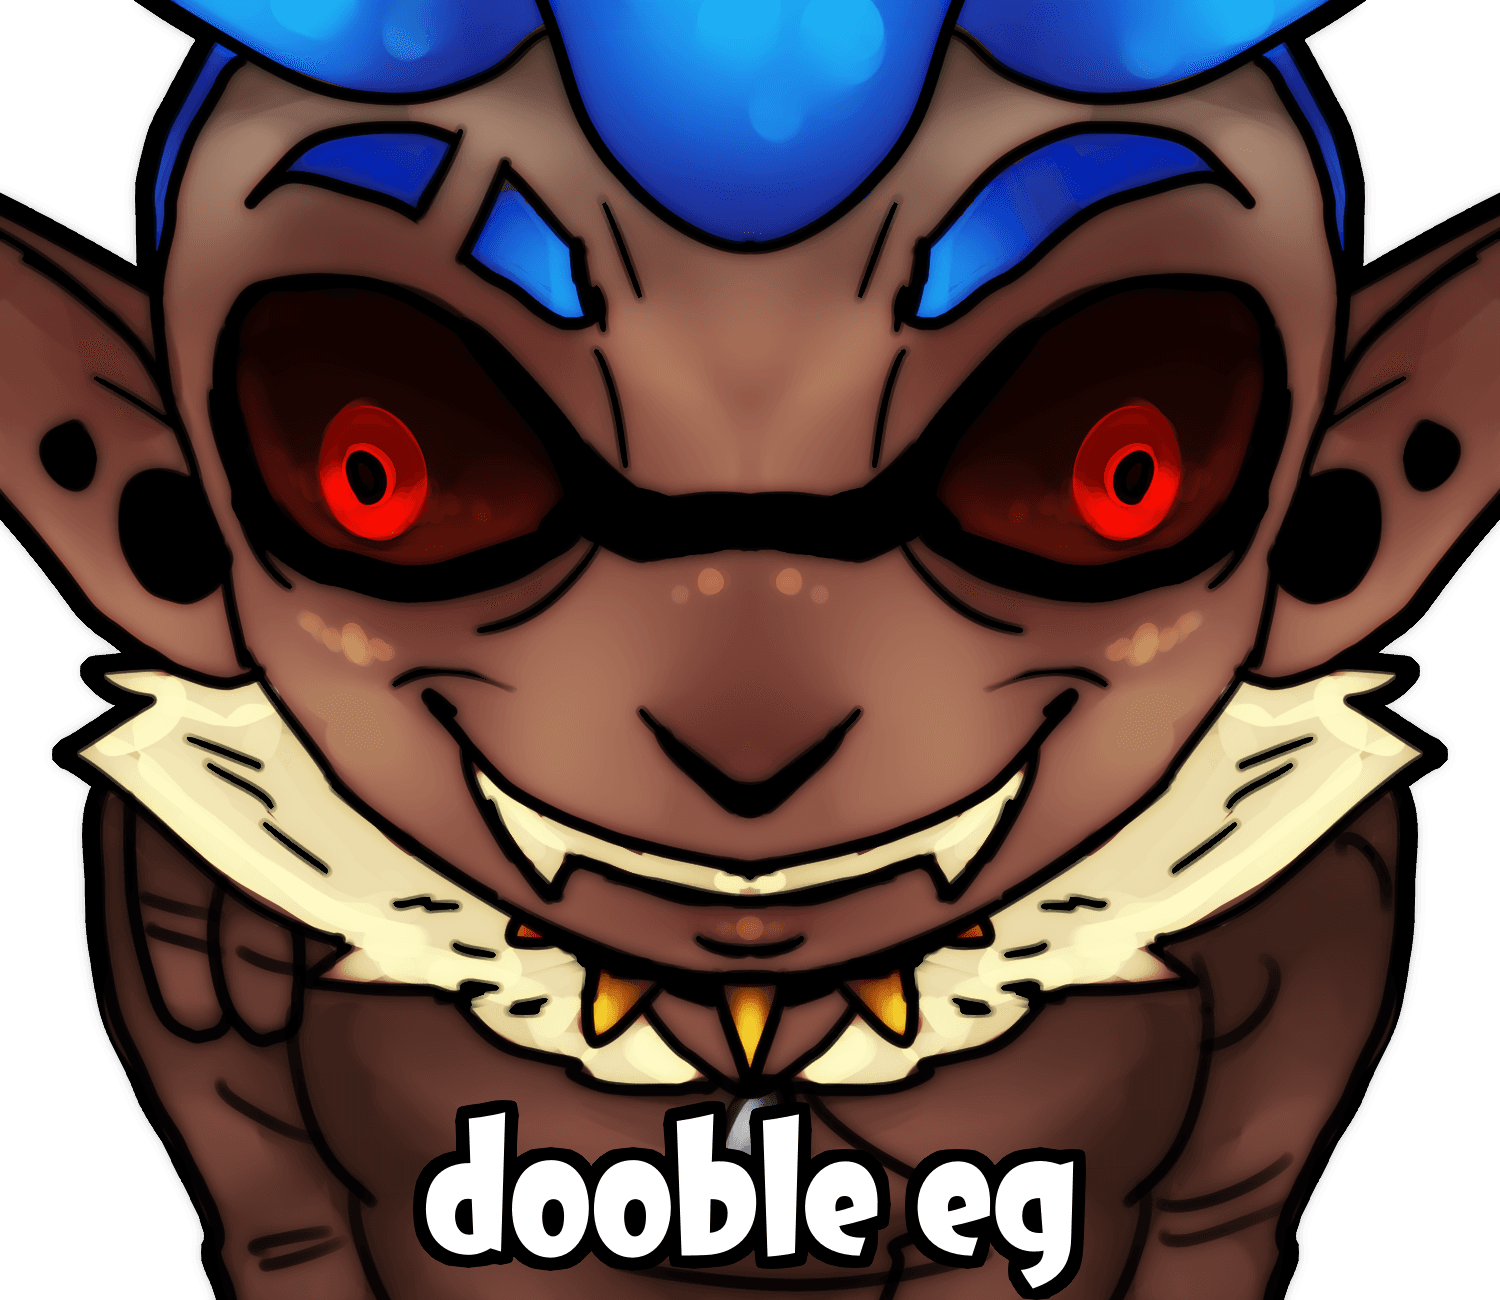 Double Egg/BATIENCE (Myself)